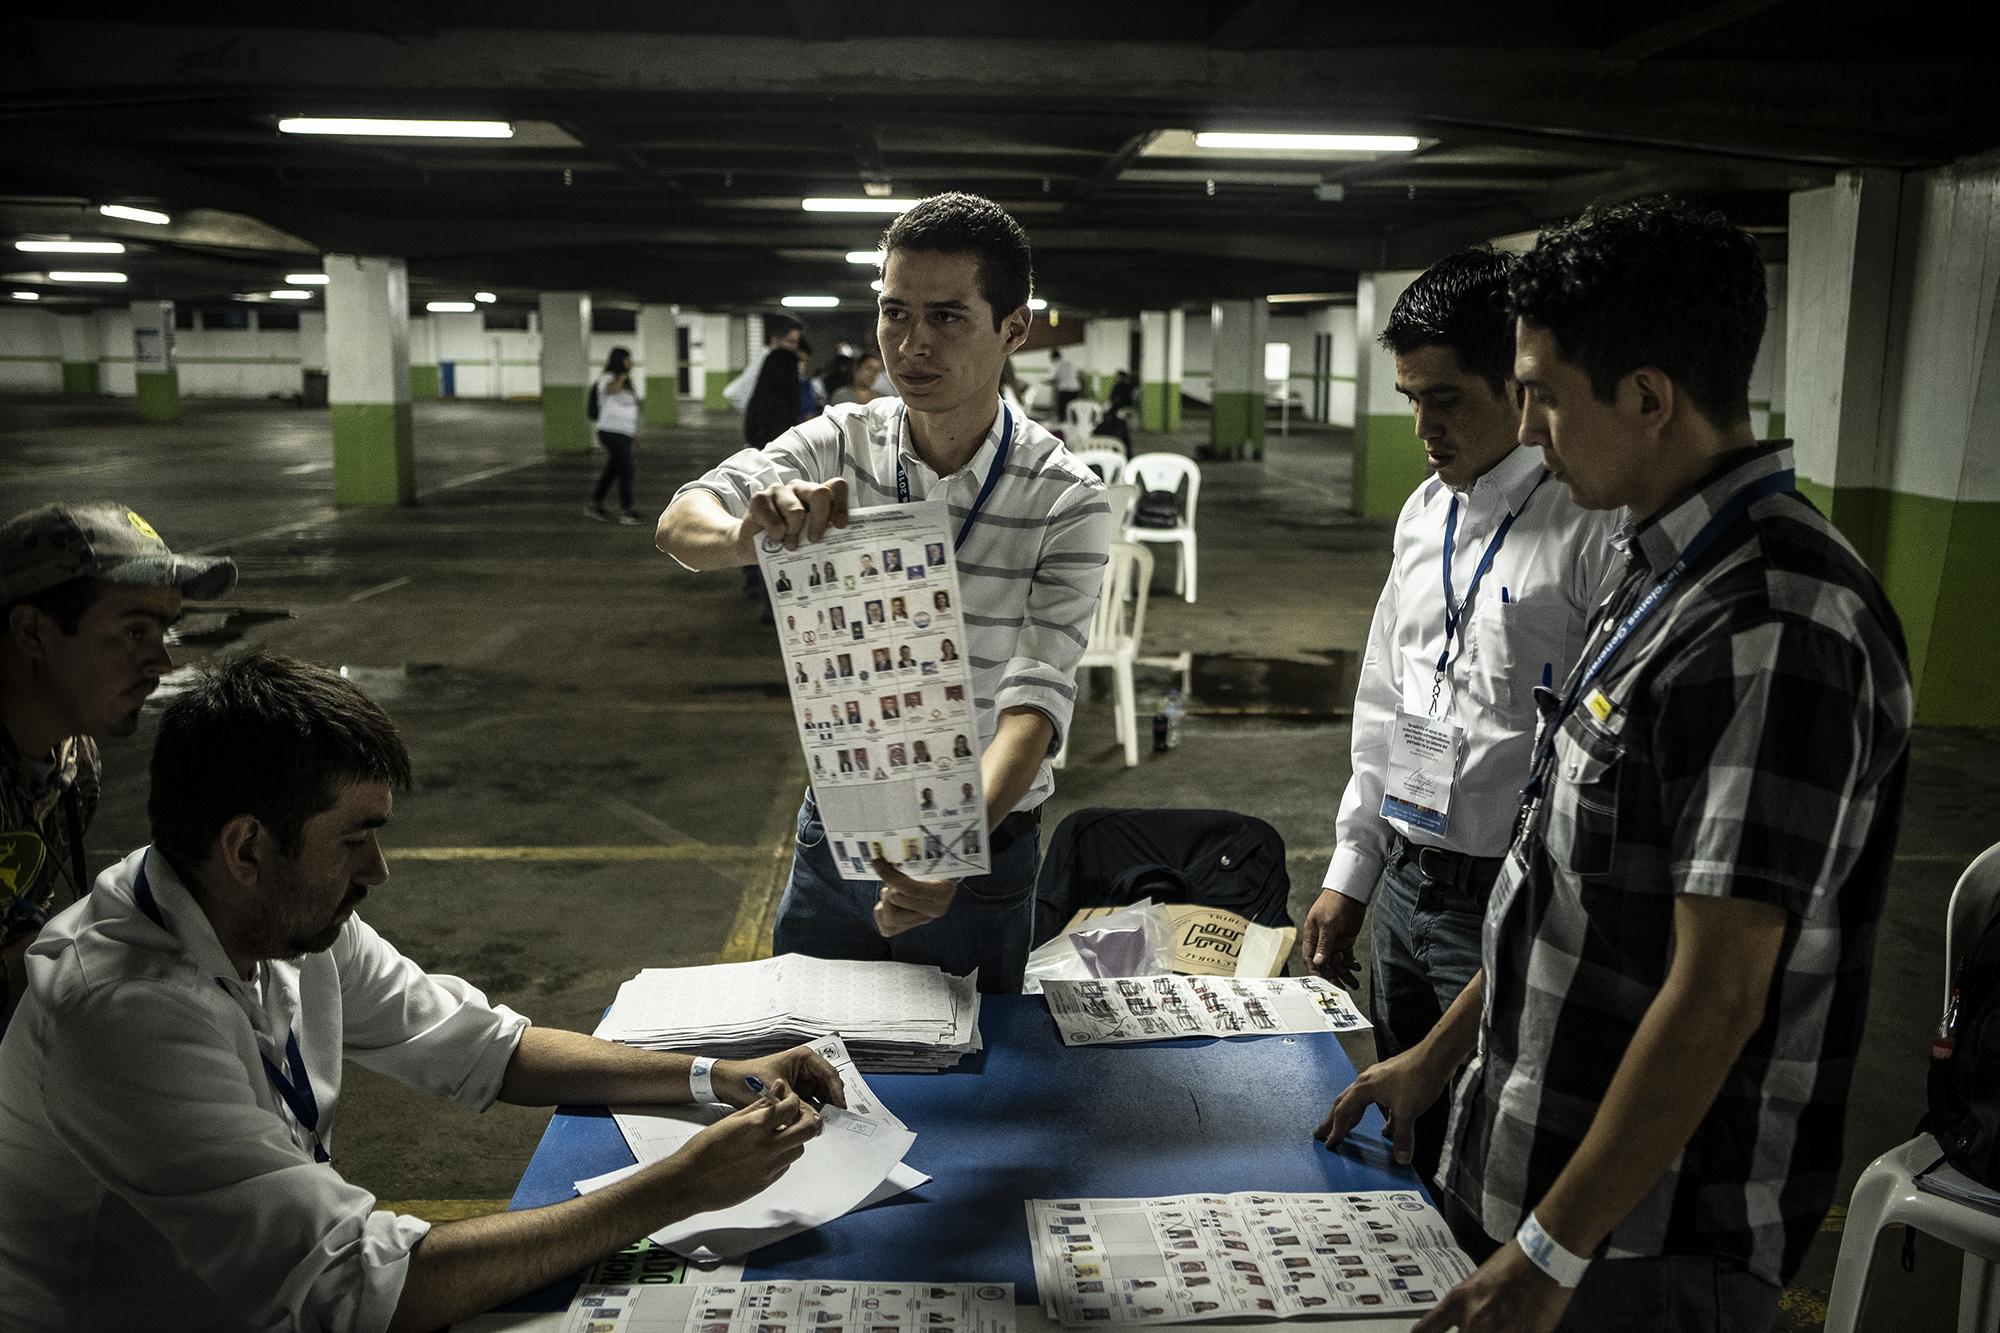 En Guatemala, durante la jornada electoral del 16 de junio, solo el 53 % de votantes acudió a las urnas, siendo esta la elección con menos participación en los últimos años. Foto: Archivo / El Faro